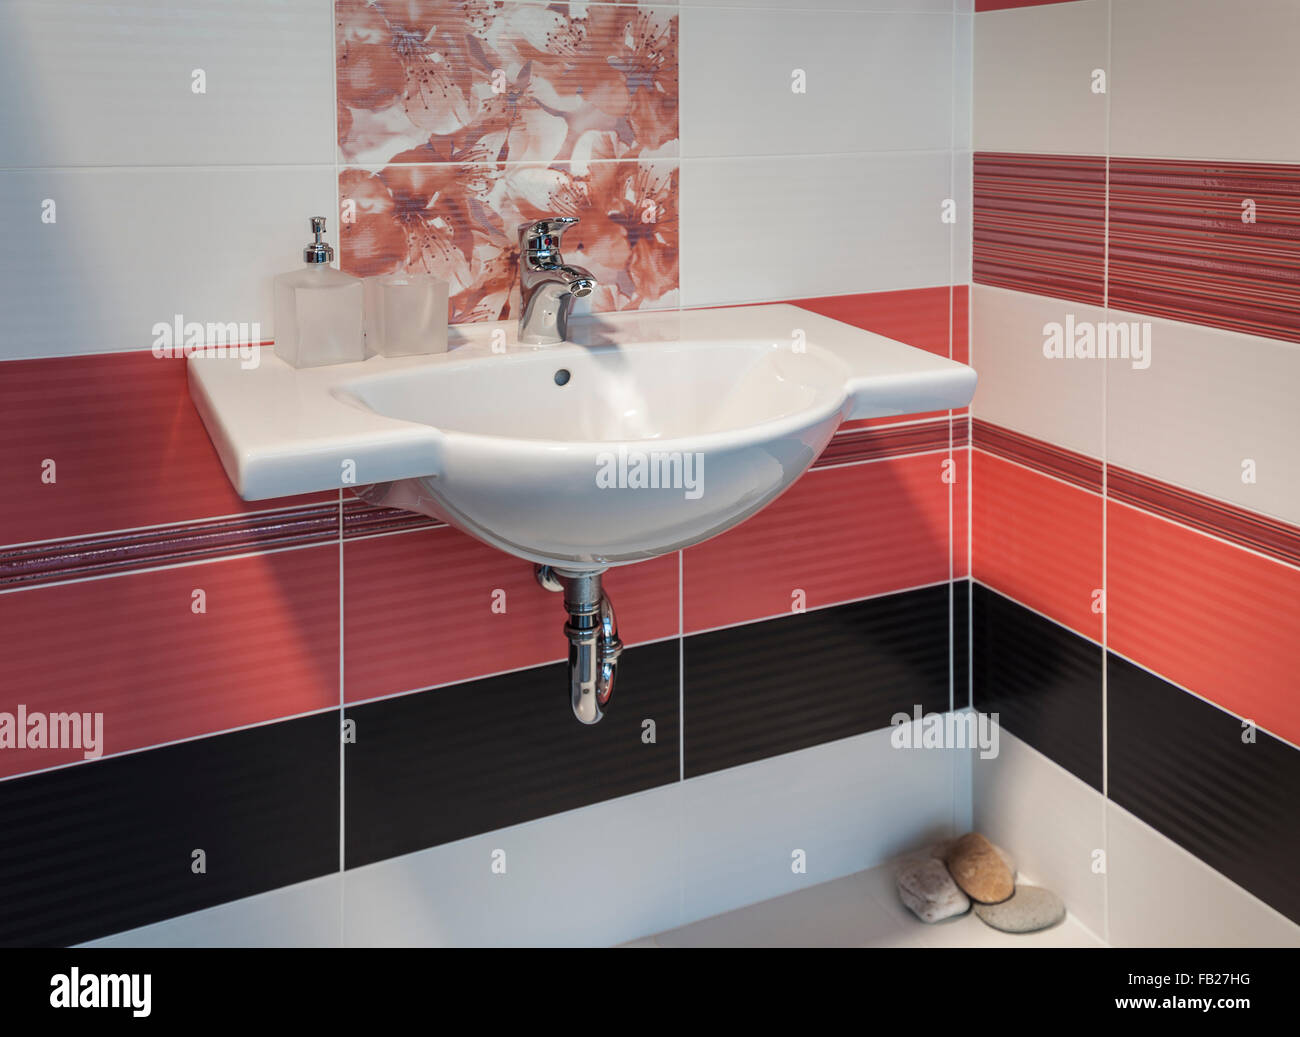 Dettaglio della bella ed elegante bagno con motivo floreale Foto Stock